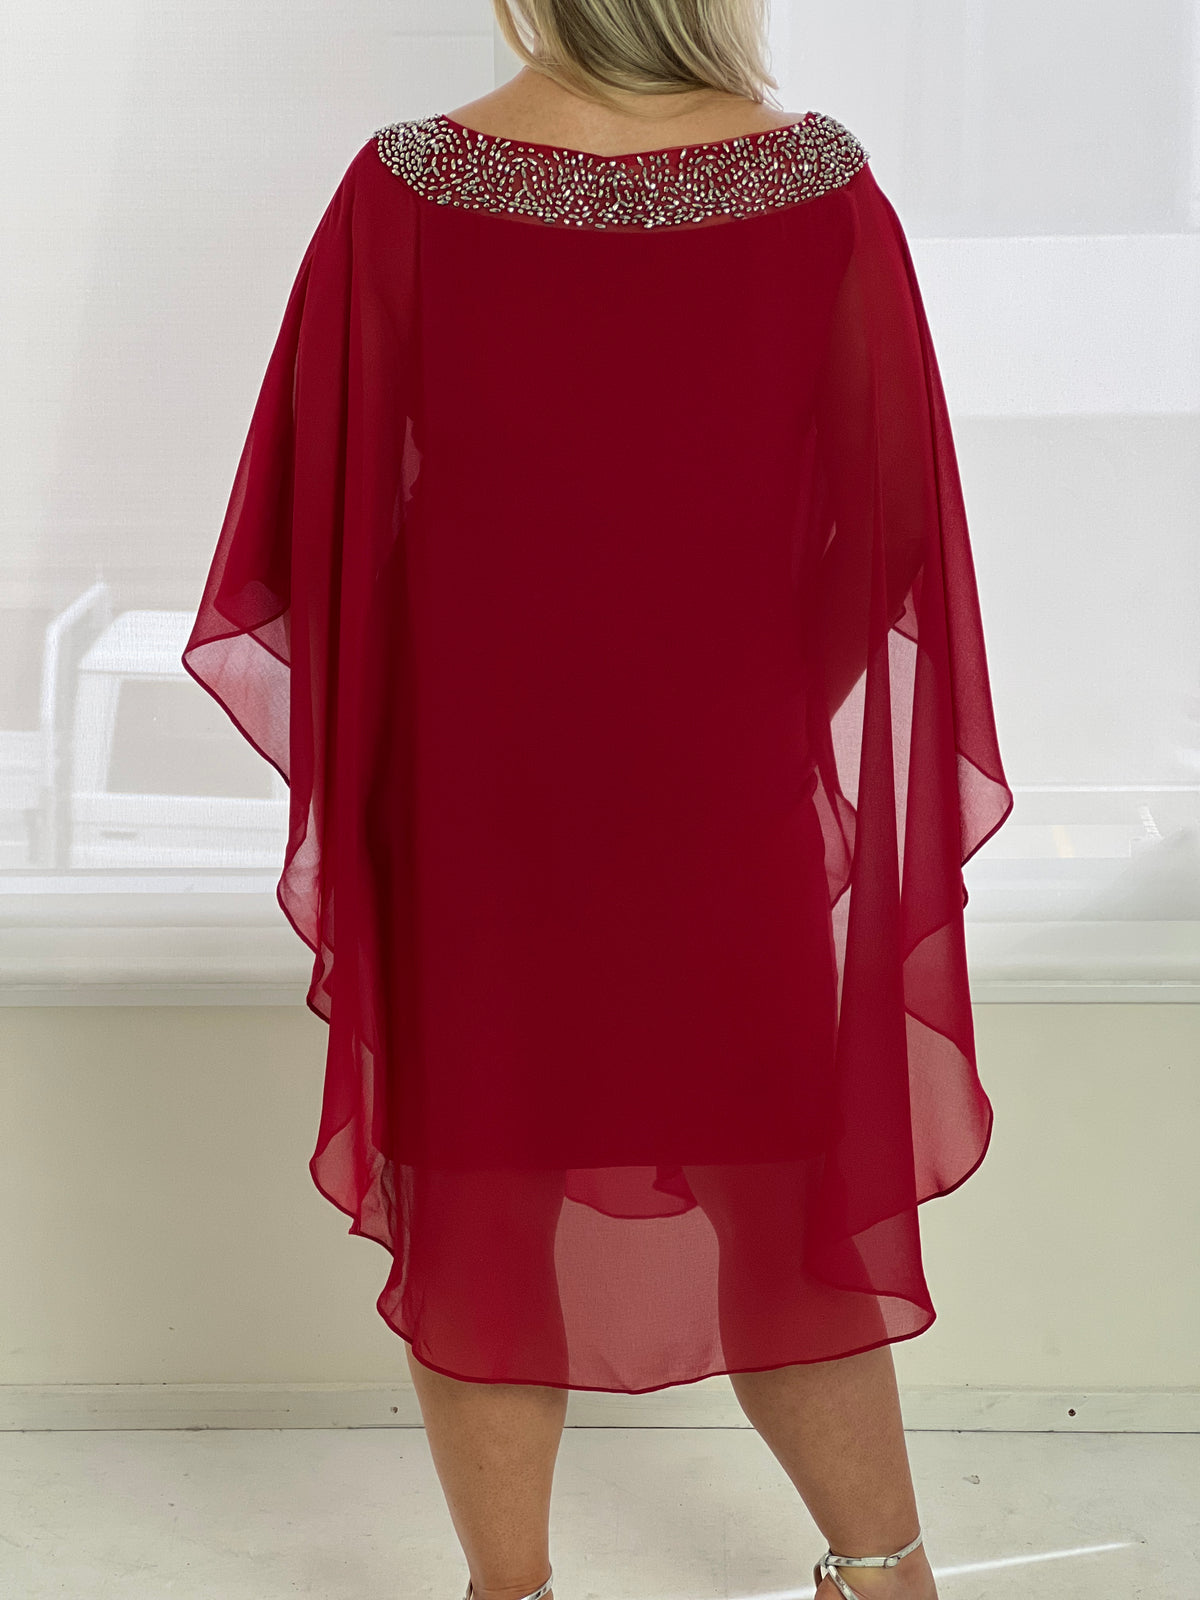 Etan Red Evening Dress